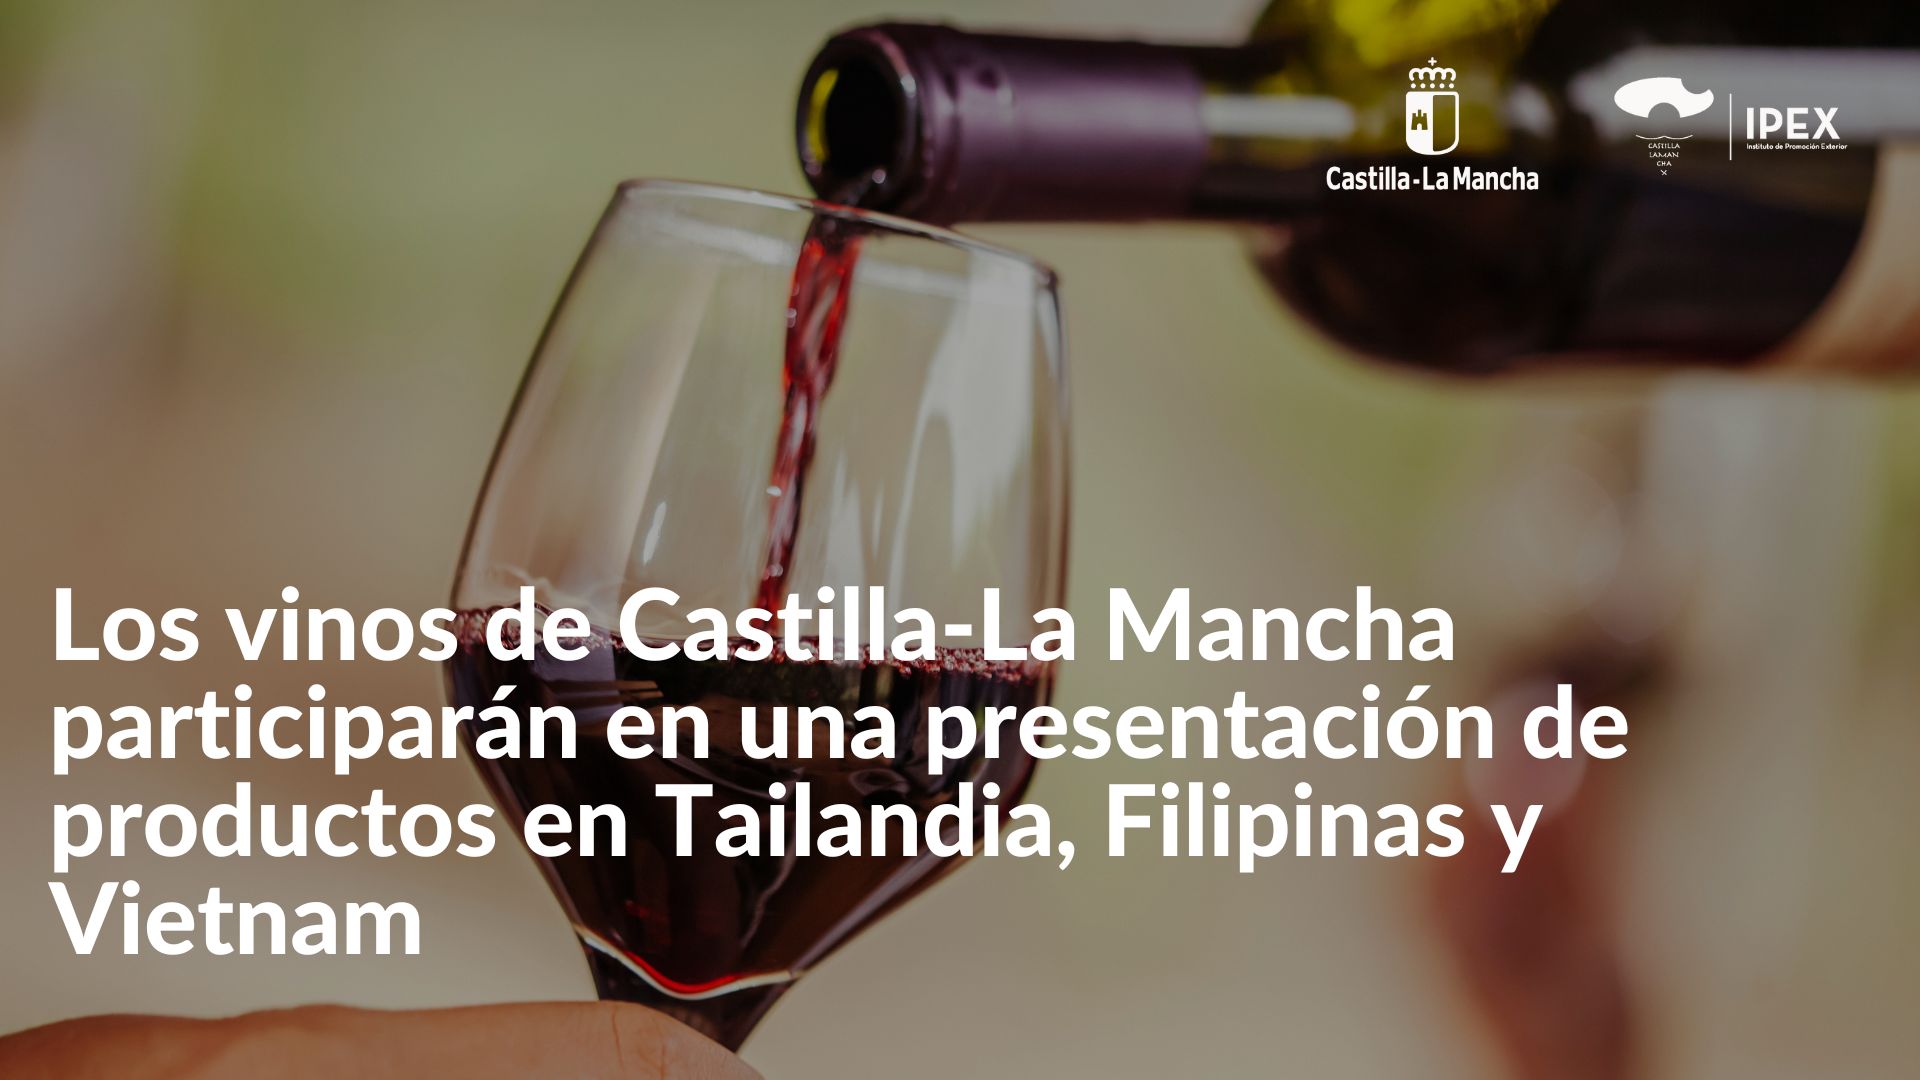 Los vinos de Castilla-La Mancha participarán en una presentación de productos en Tailandia, Filipinas y Vietnam